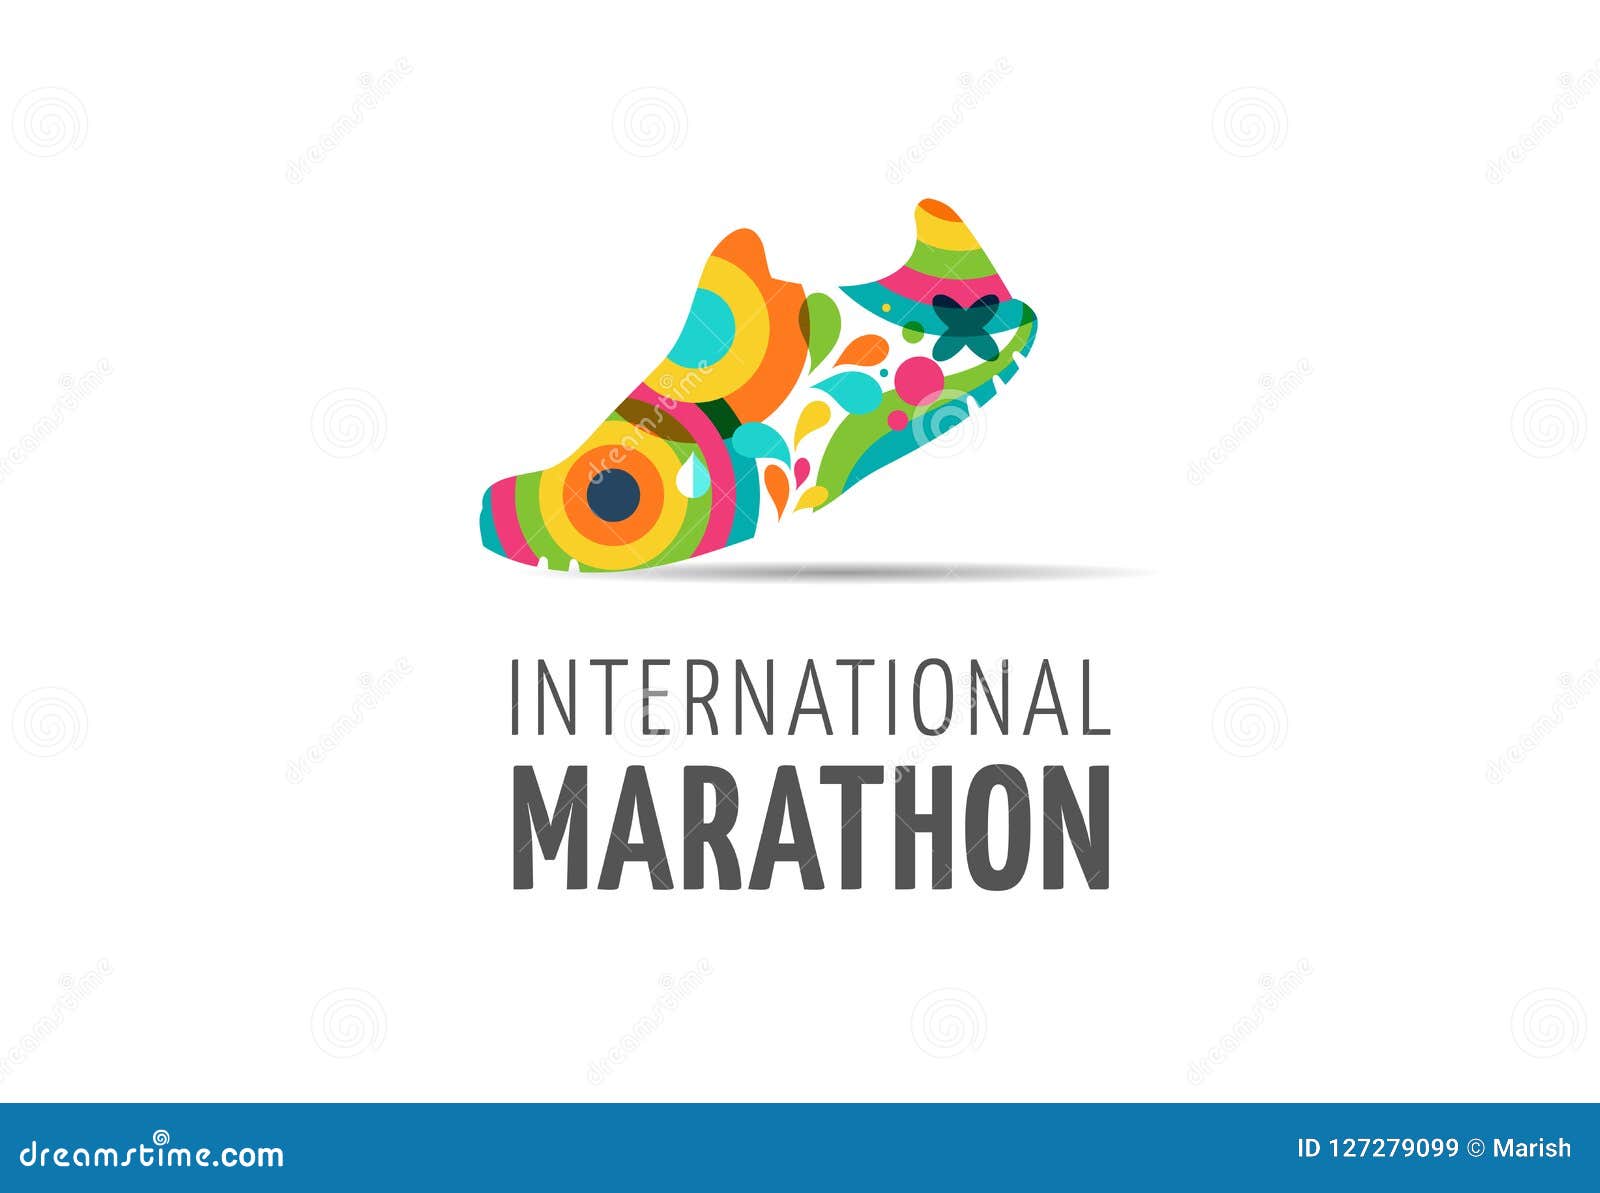 run icon, , marathon poster and logo